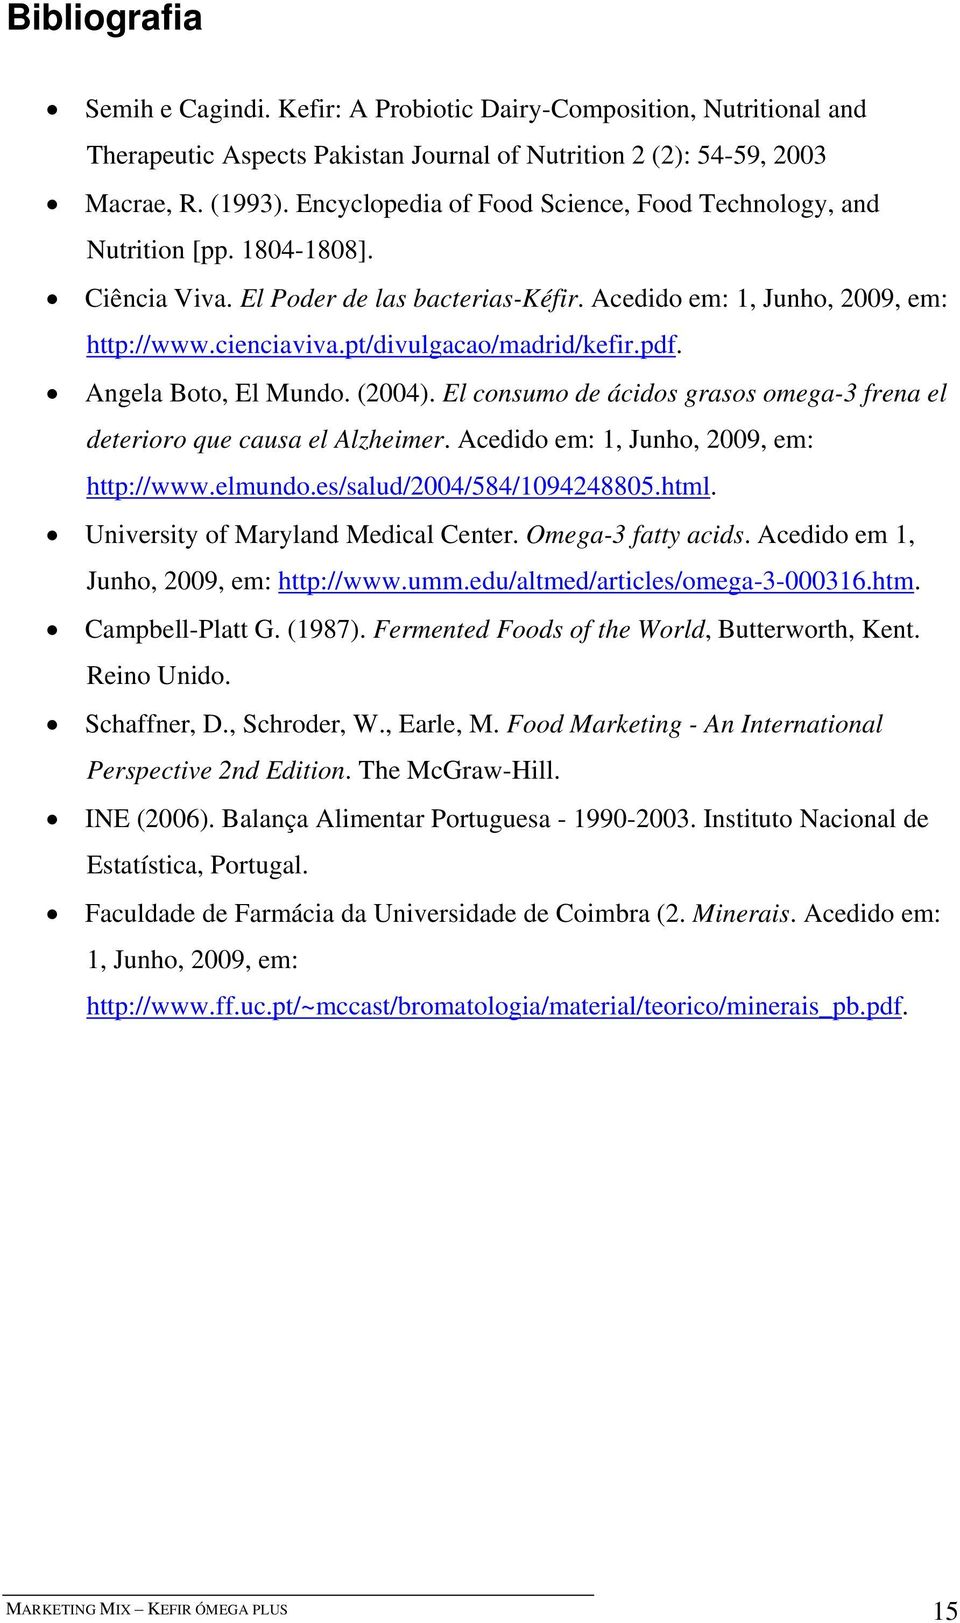 pt/divulgacao/madrid/kefir.pdf. Angela Boto, El Mundo. (2004). El consumo de ácidos grasos omega-3 frena el deterioro que causa el Alzheimer. Acedido em: 1, Junho, 2009, em: http://www.elmundo.